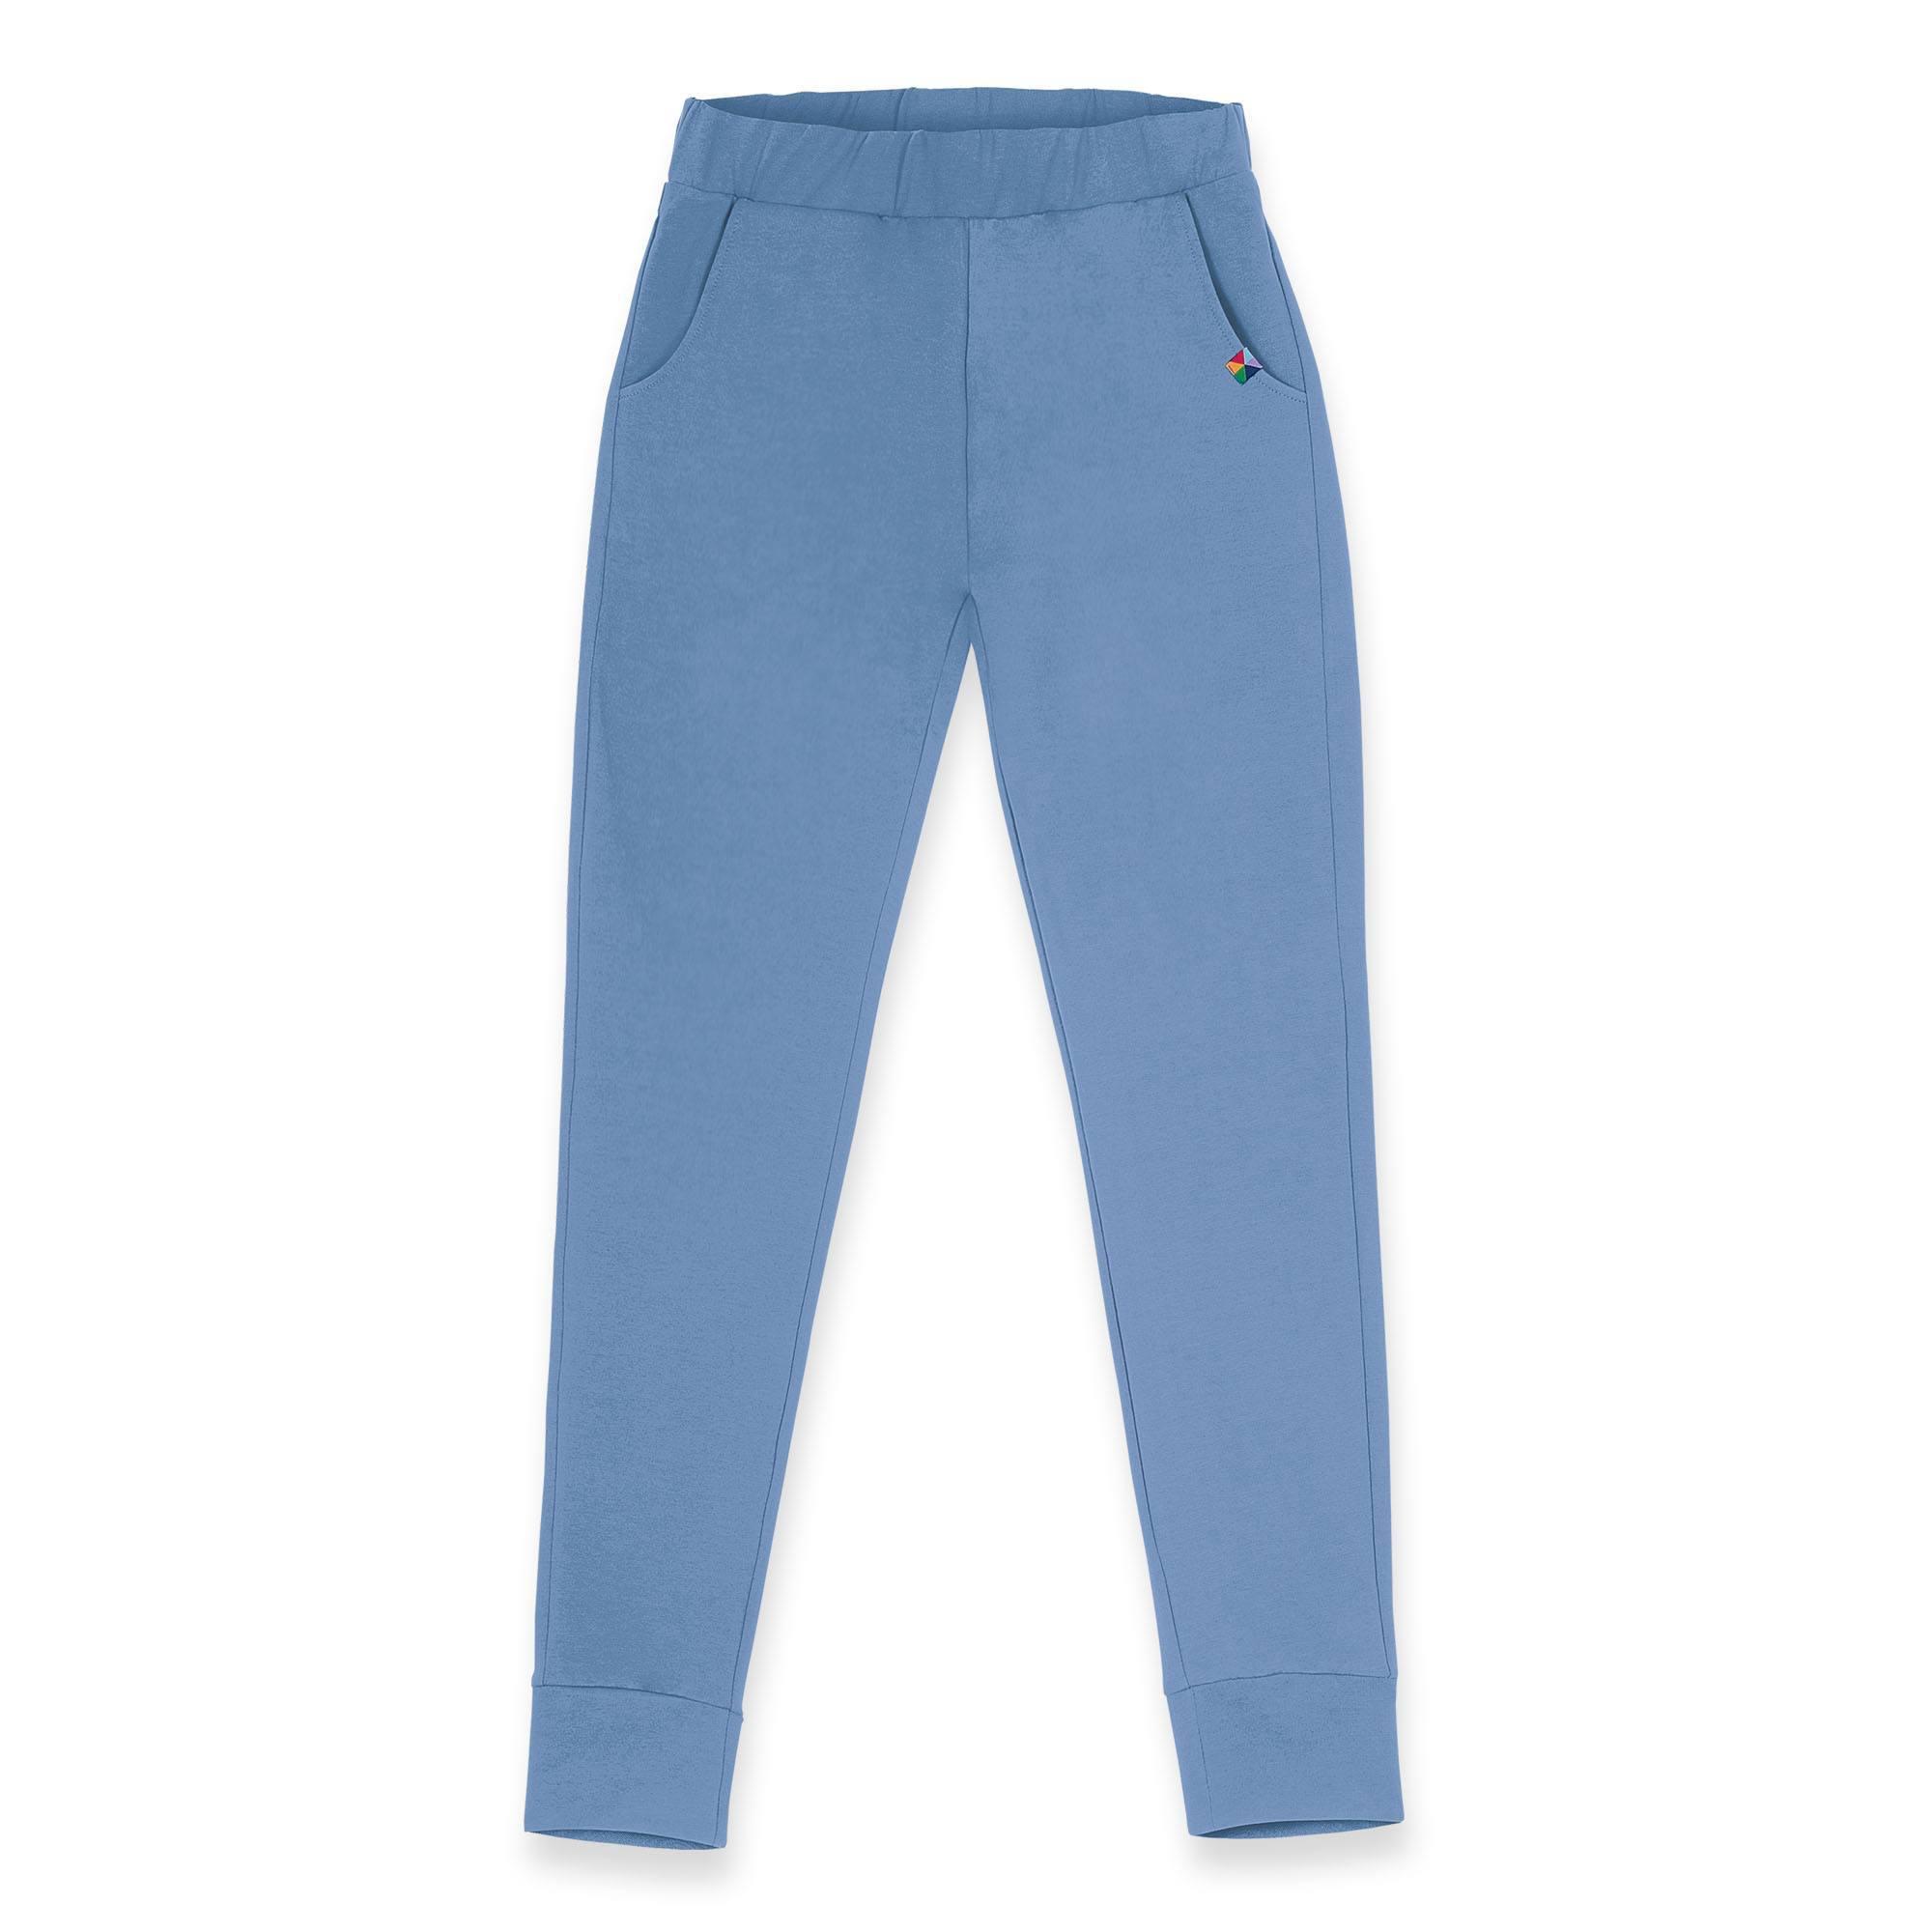 Błękitne spodnie dresowe damskie